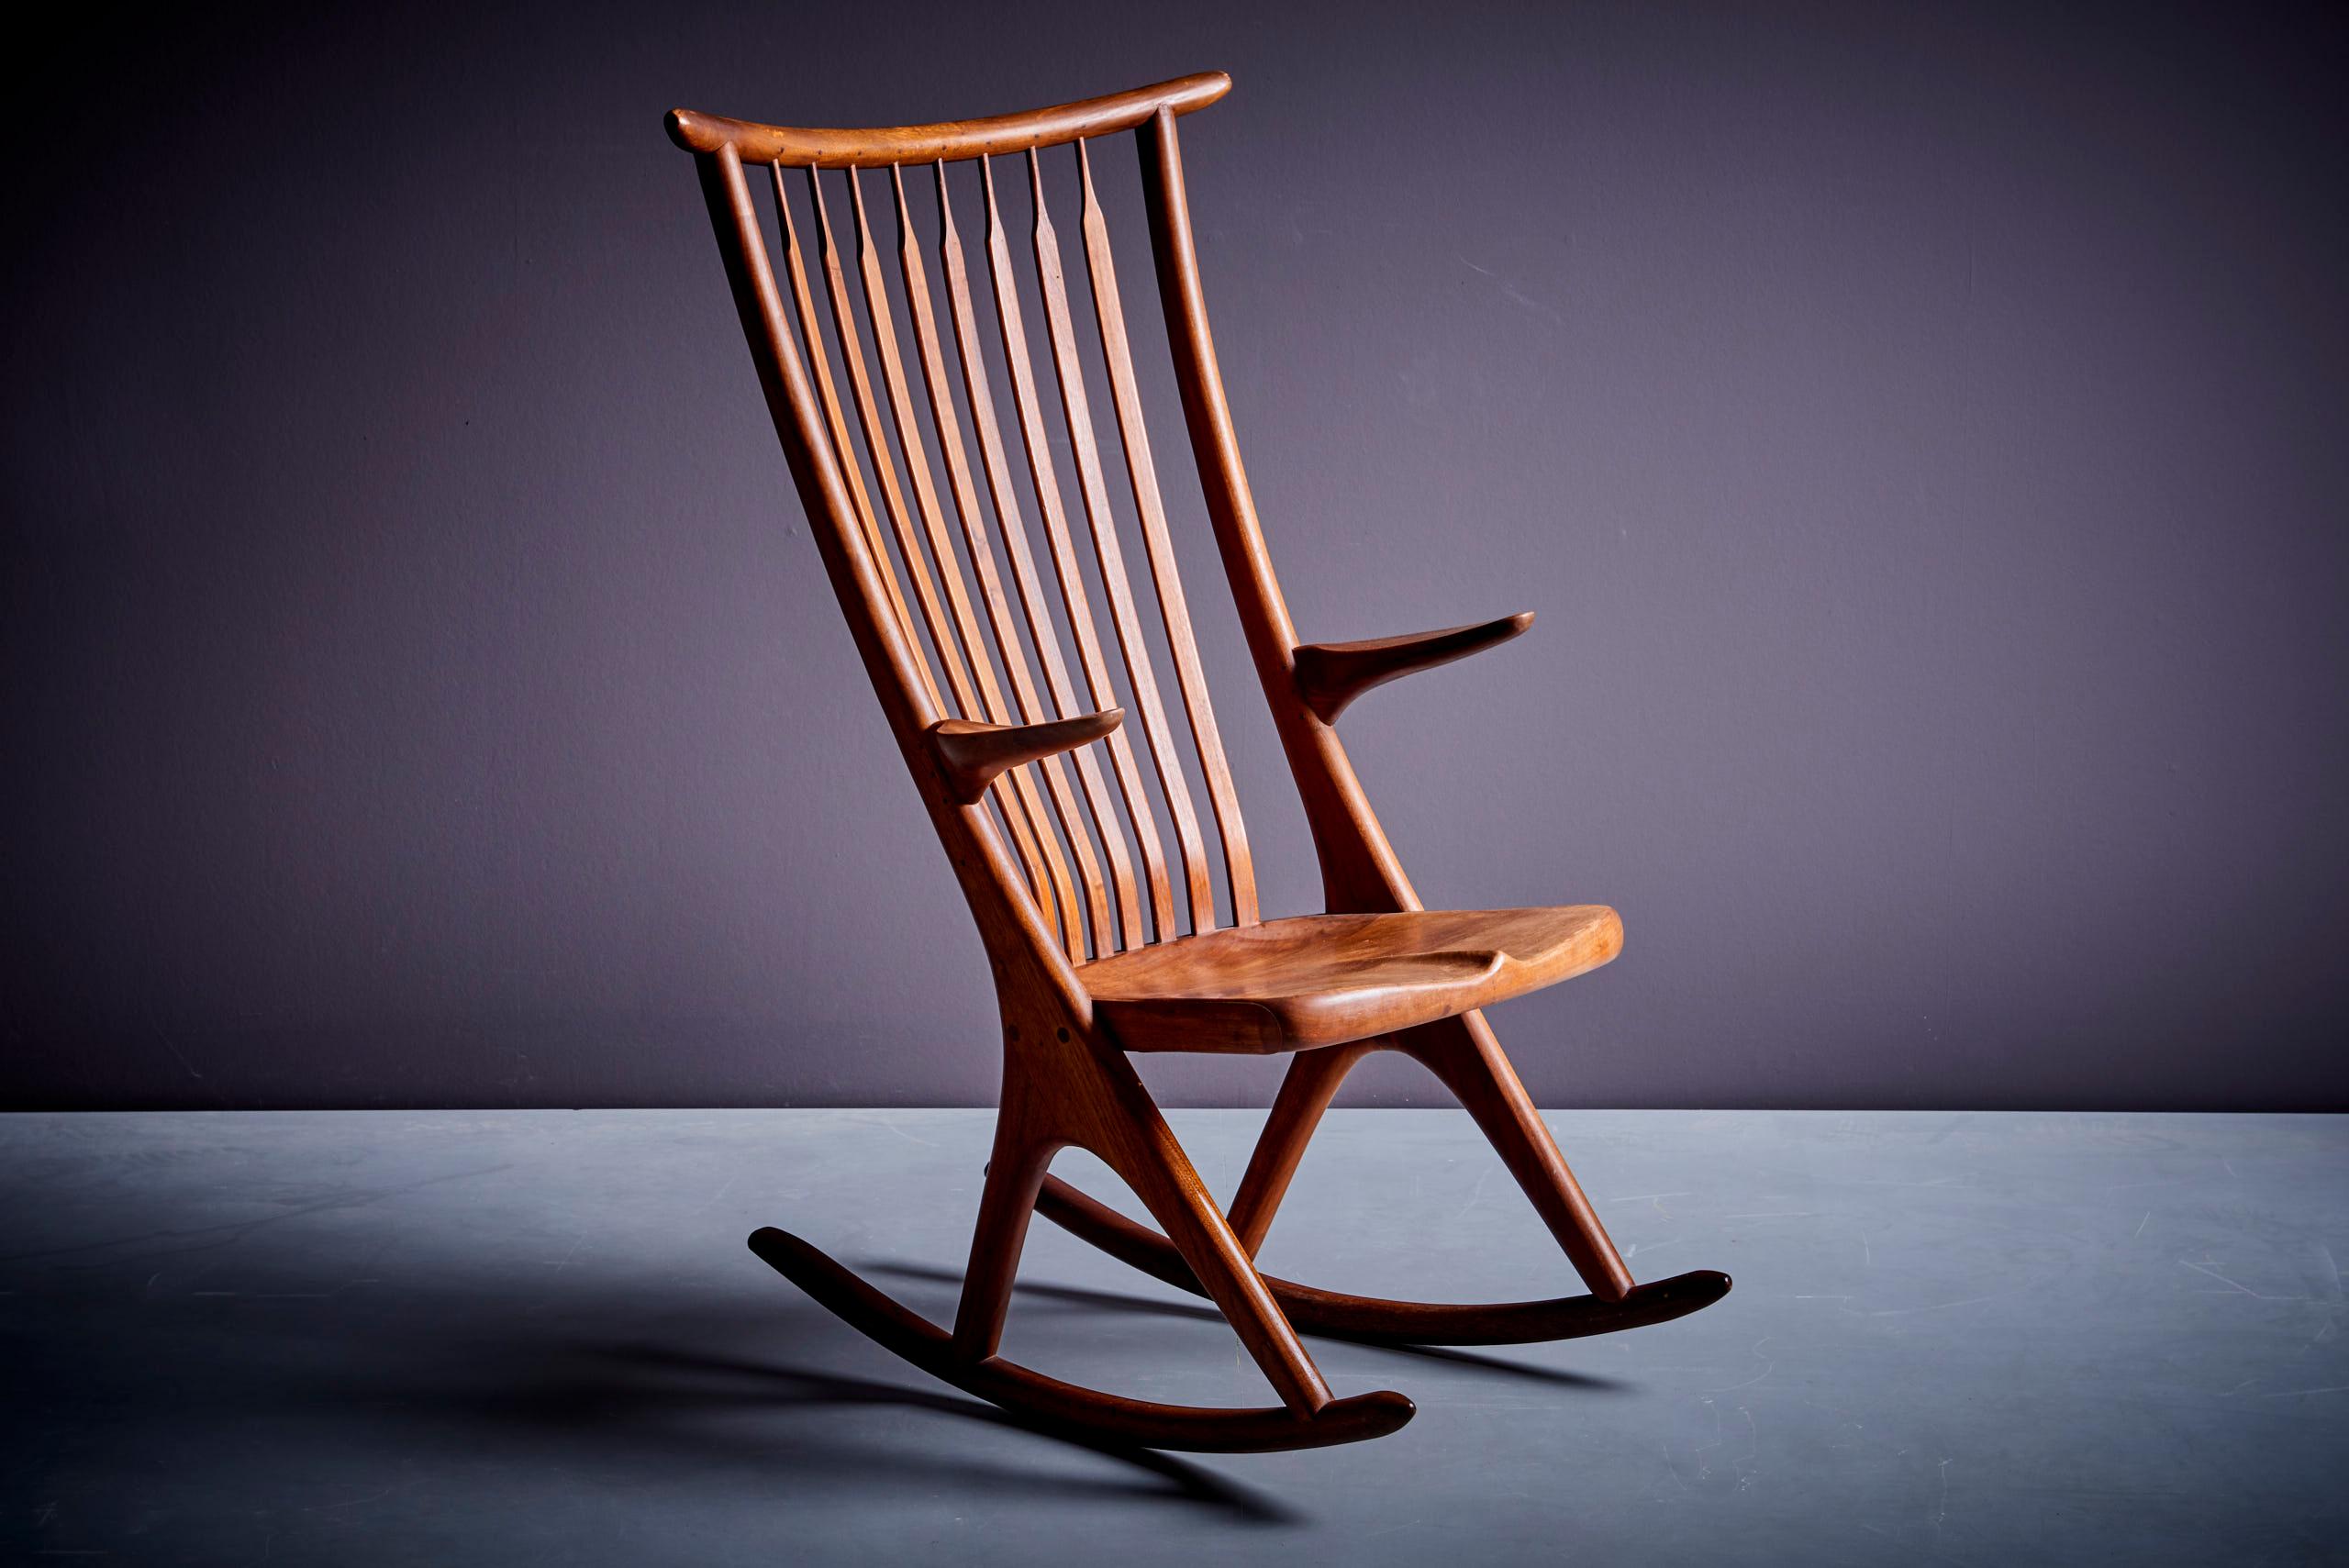 Von Richard Harrison entworfener, handgefertigter Studio-Schaukelstuhl. Dieser bemerkenswerte, leichte und skulpturale Stuhl ist aus Nussbaumholz gefertigt. Der Stuhl hat schöne Verbindungen und ist in einem perfekten Zustand.
R. Harrison wurde